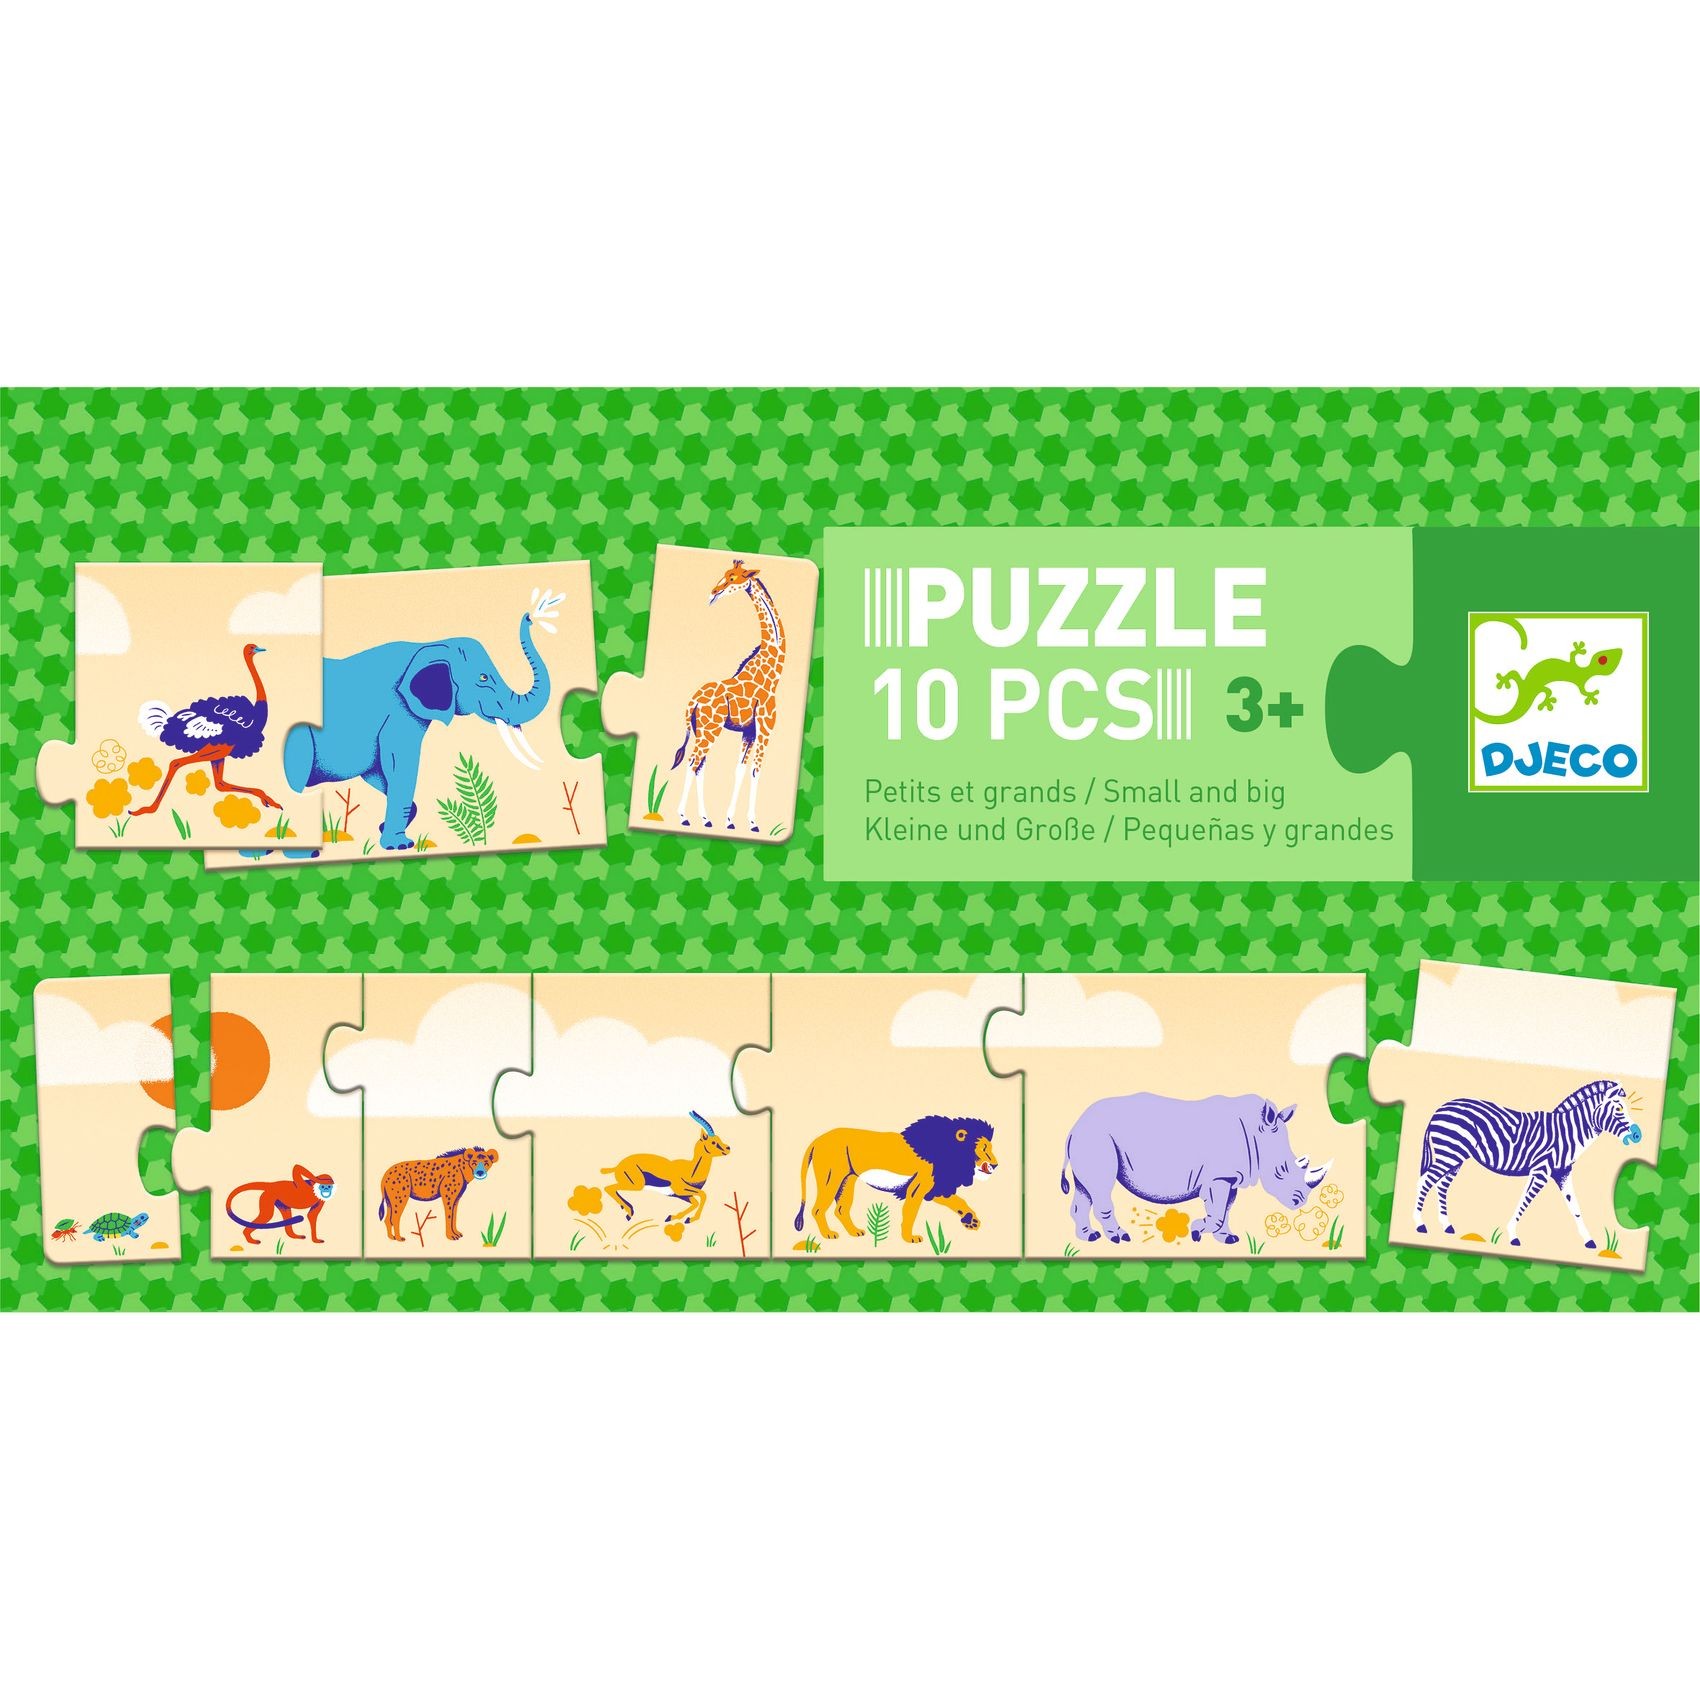 DJECO Puzzle od největšího po nejmenší zvířátko DJ08189